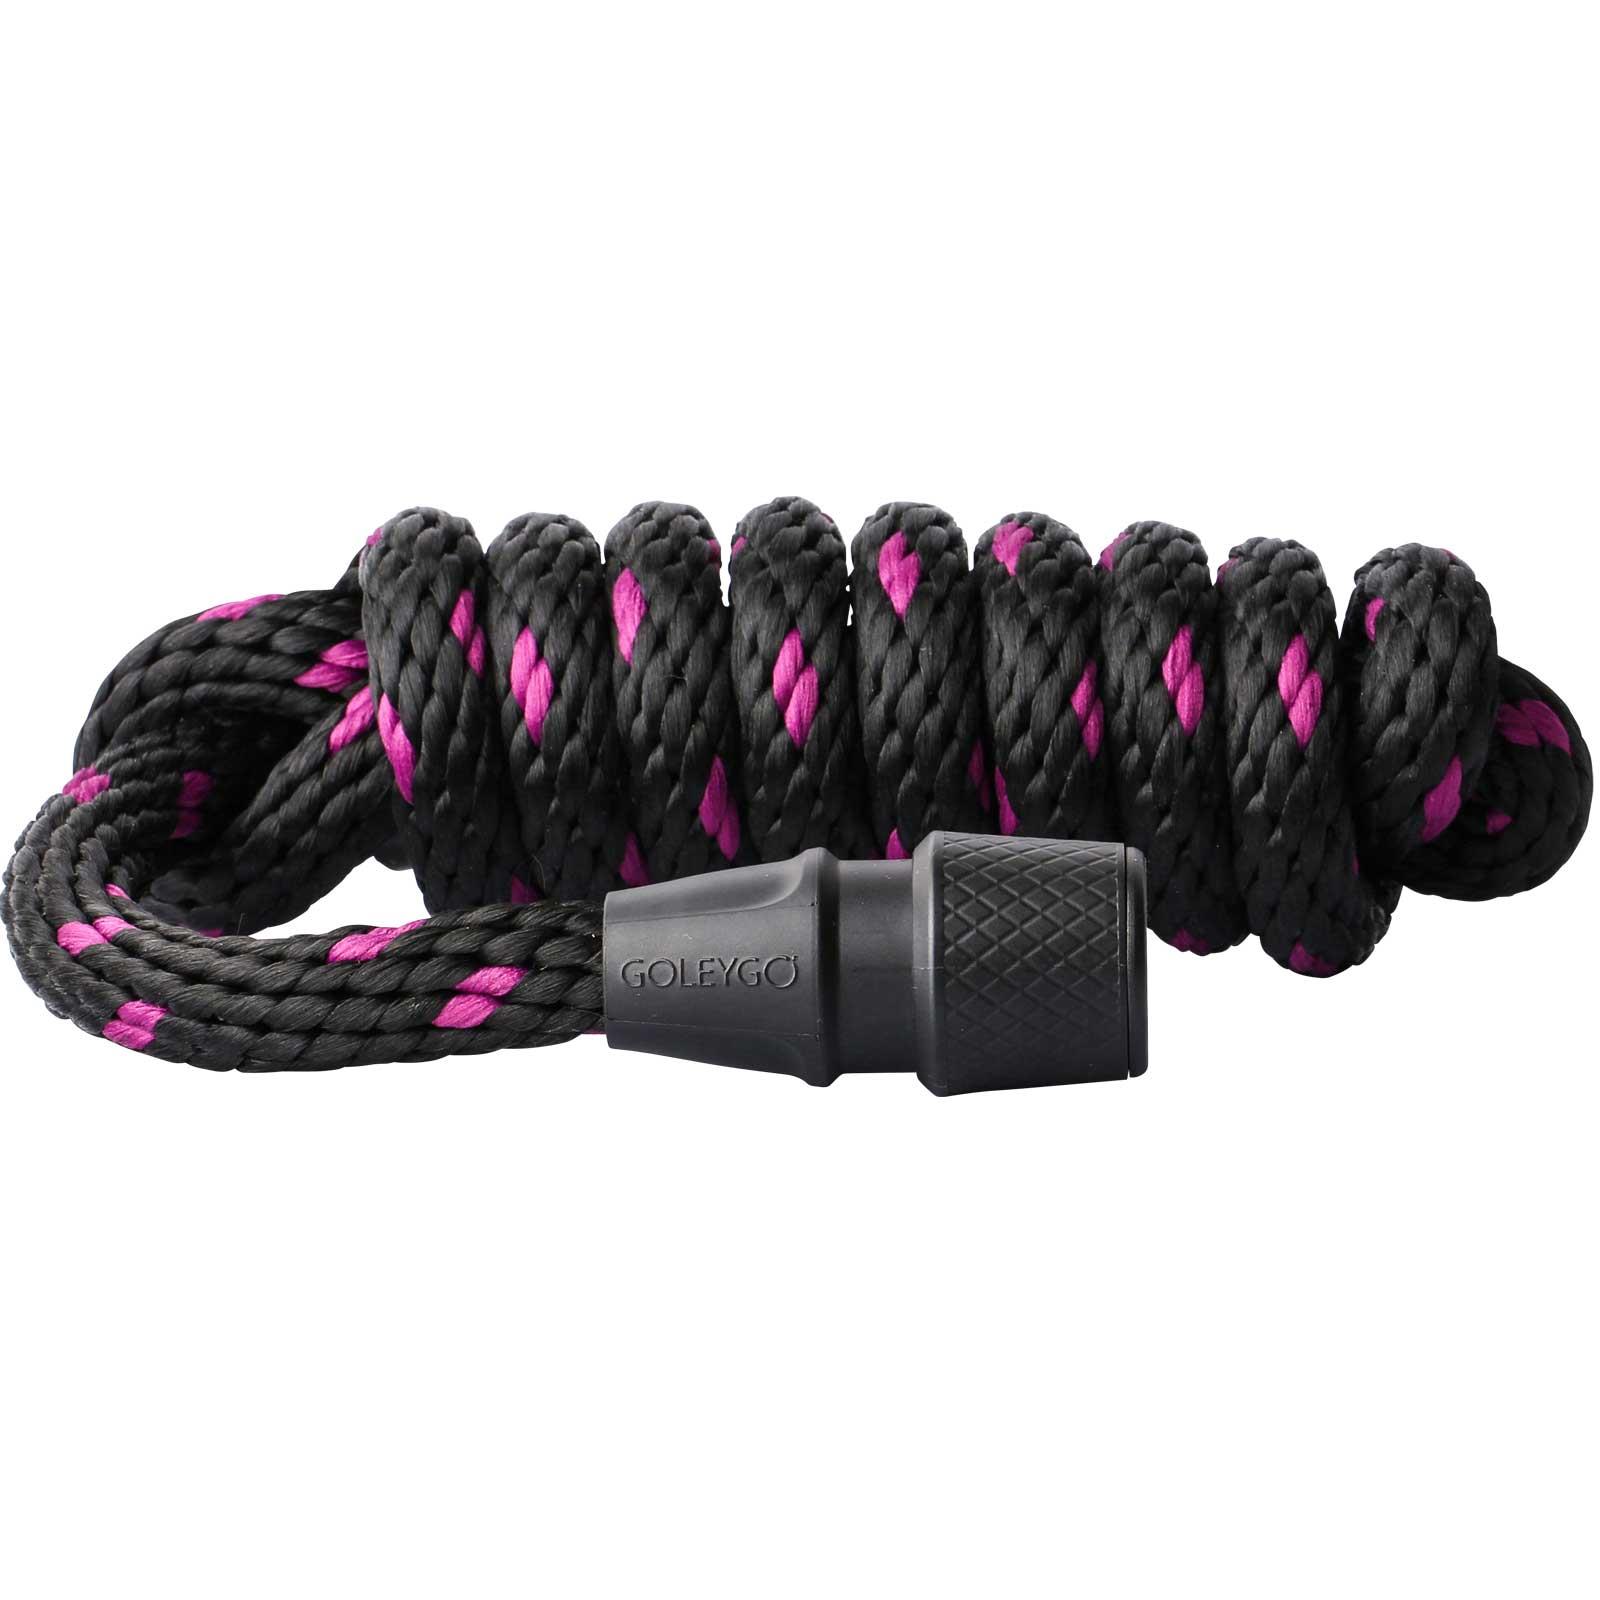 GoLeyGo 2.0 lead rope 200 cm black / fuchsia